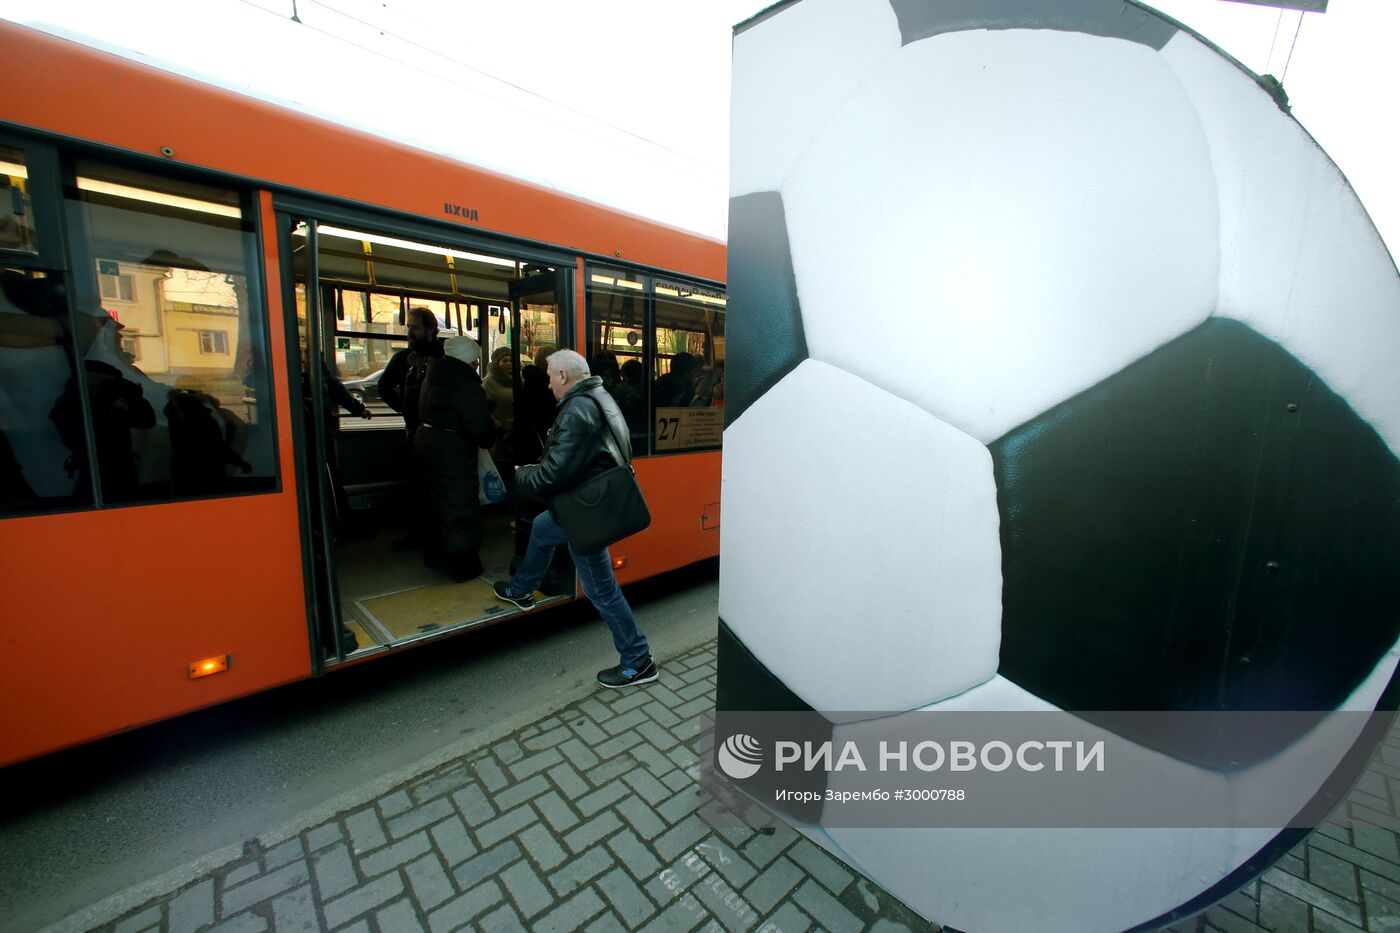 В Калининграде к ЧМ-2018 появились остановки в виде футбольных мячей